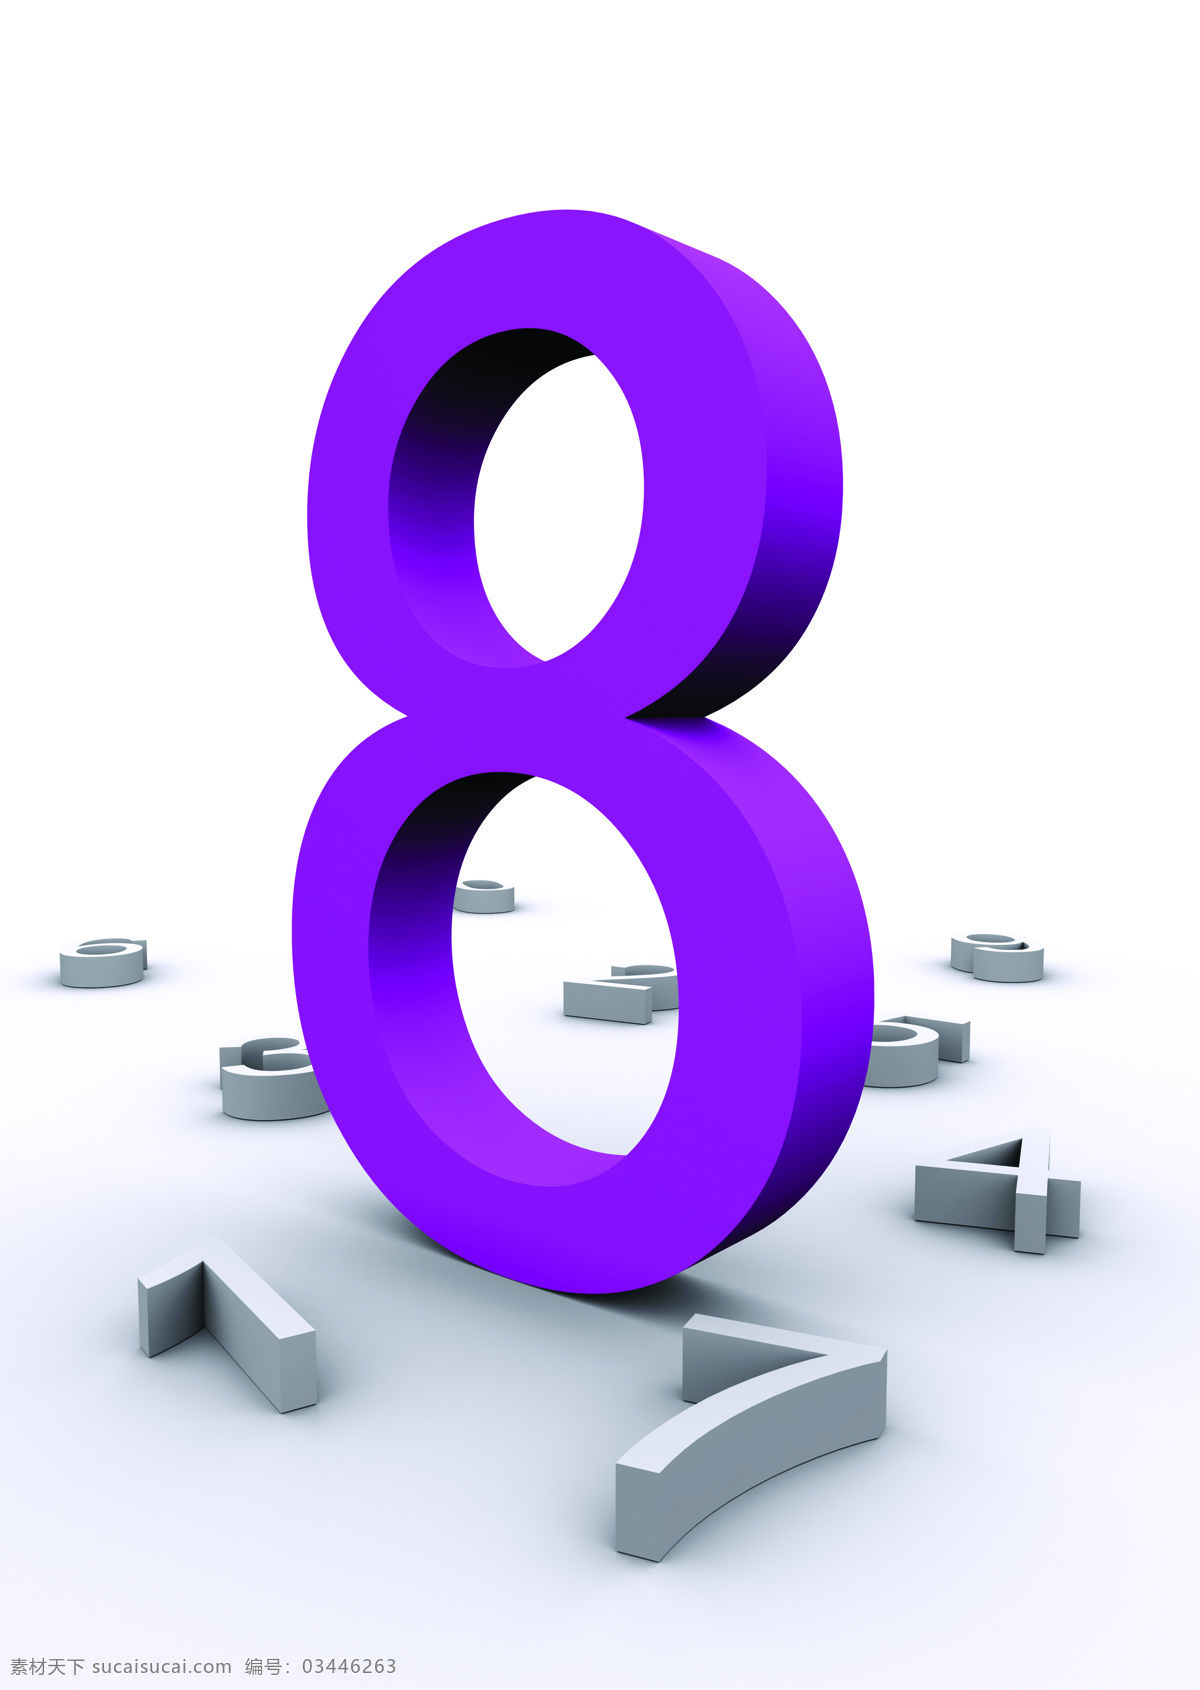 立体数字 数字 中文数字 阿拉伯数字 白色数字 紫色数字 3d作品 3d设计